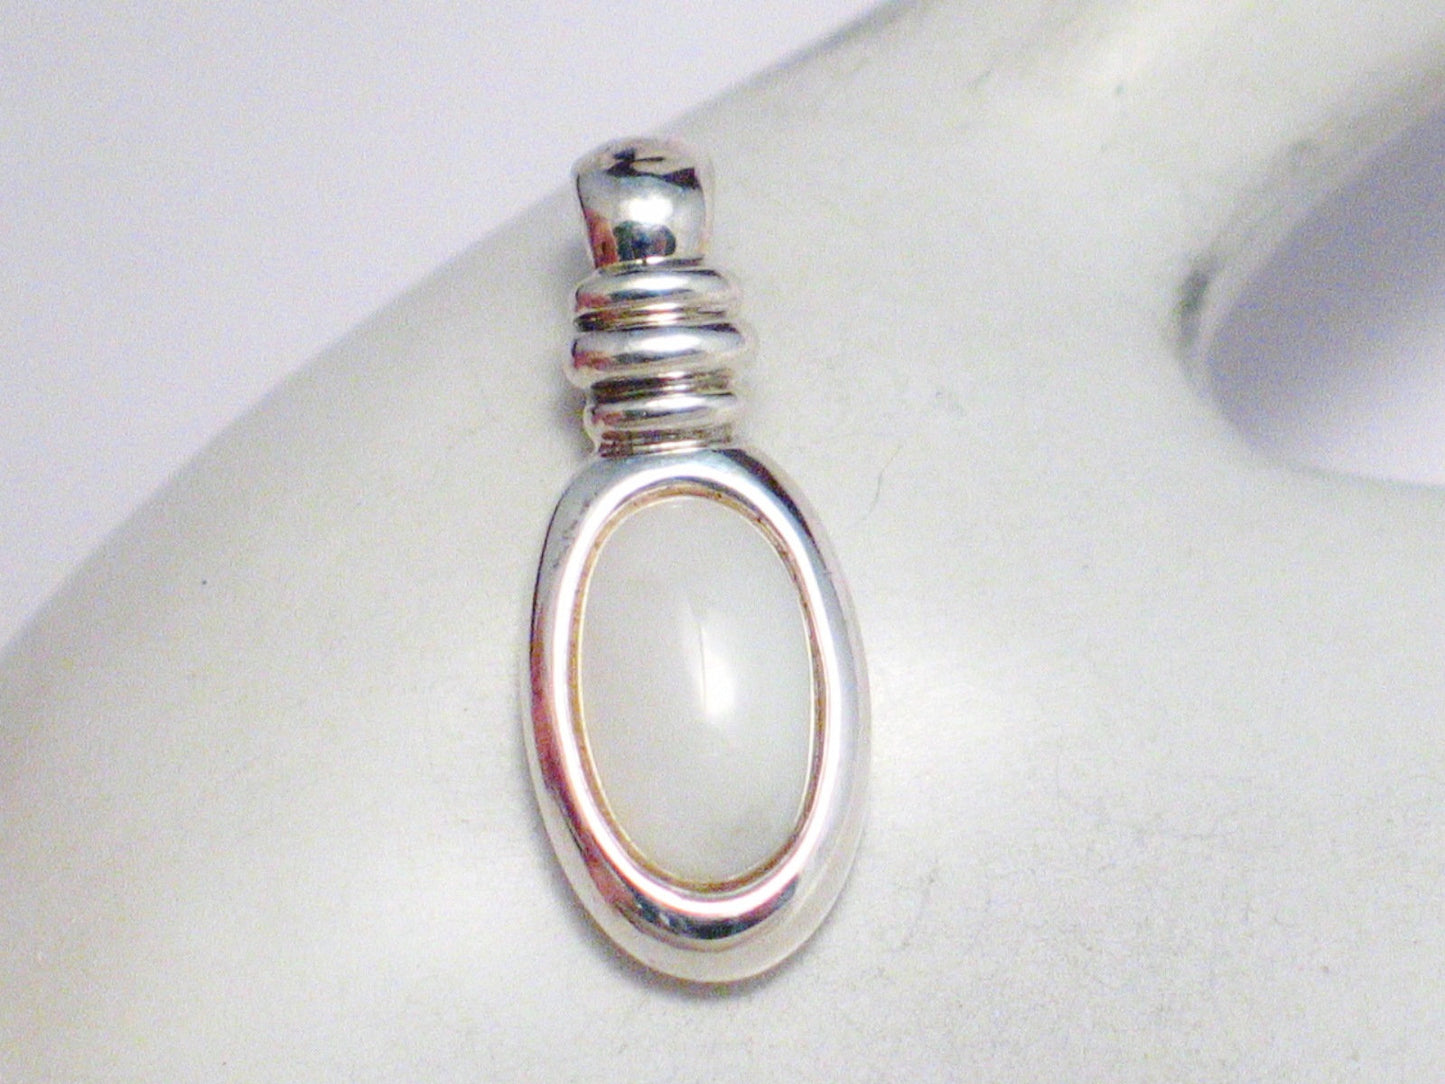 Stone Pendant, Mens Womens Sleek Oval Design White Pearl Stone Pendant - Blingschlingers  Jewelry